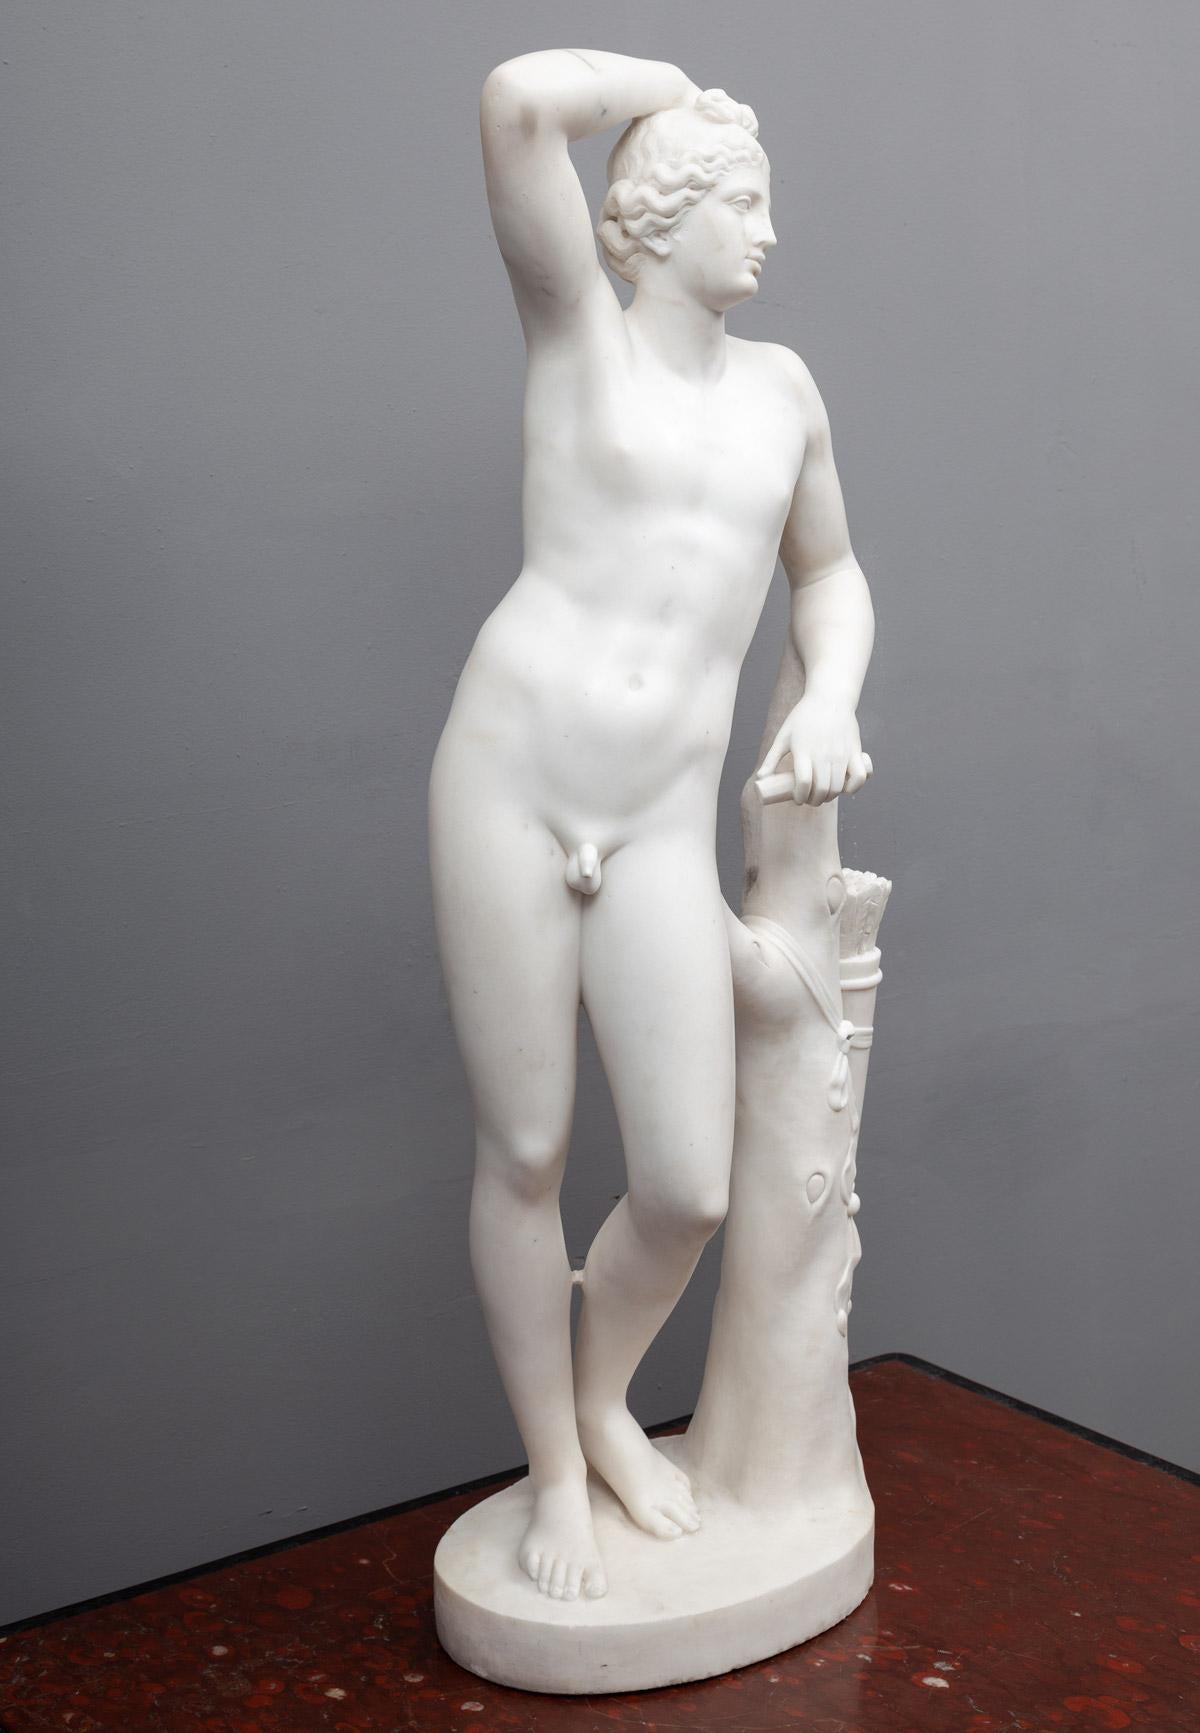 Une magnifique statue antique en marbre de Carrare représentant Adonis. La figure masculine est représentée nue, appuyée contre un arbre.
Adonis était l'amant mortel de la déesse Aphrodite dans la mythologie grecque.